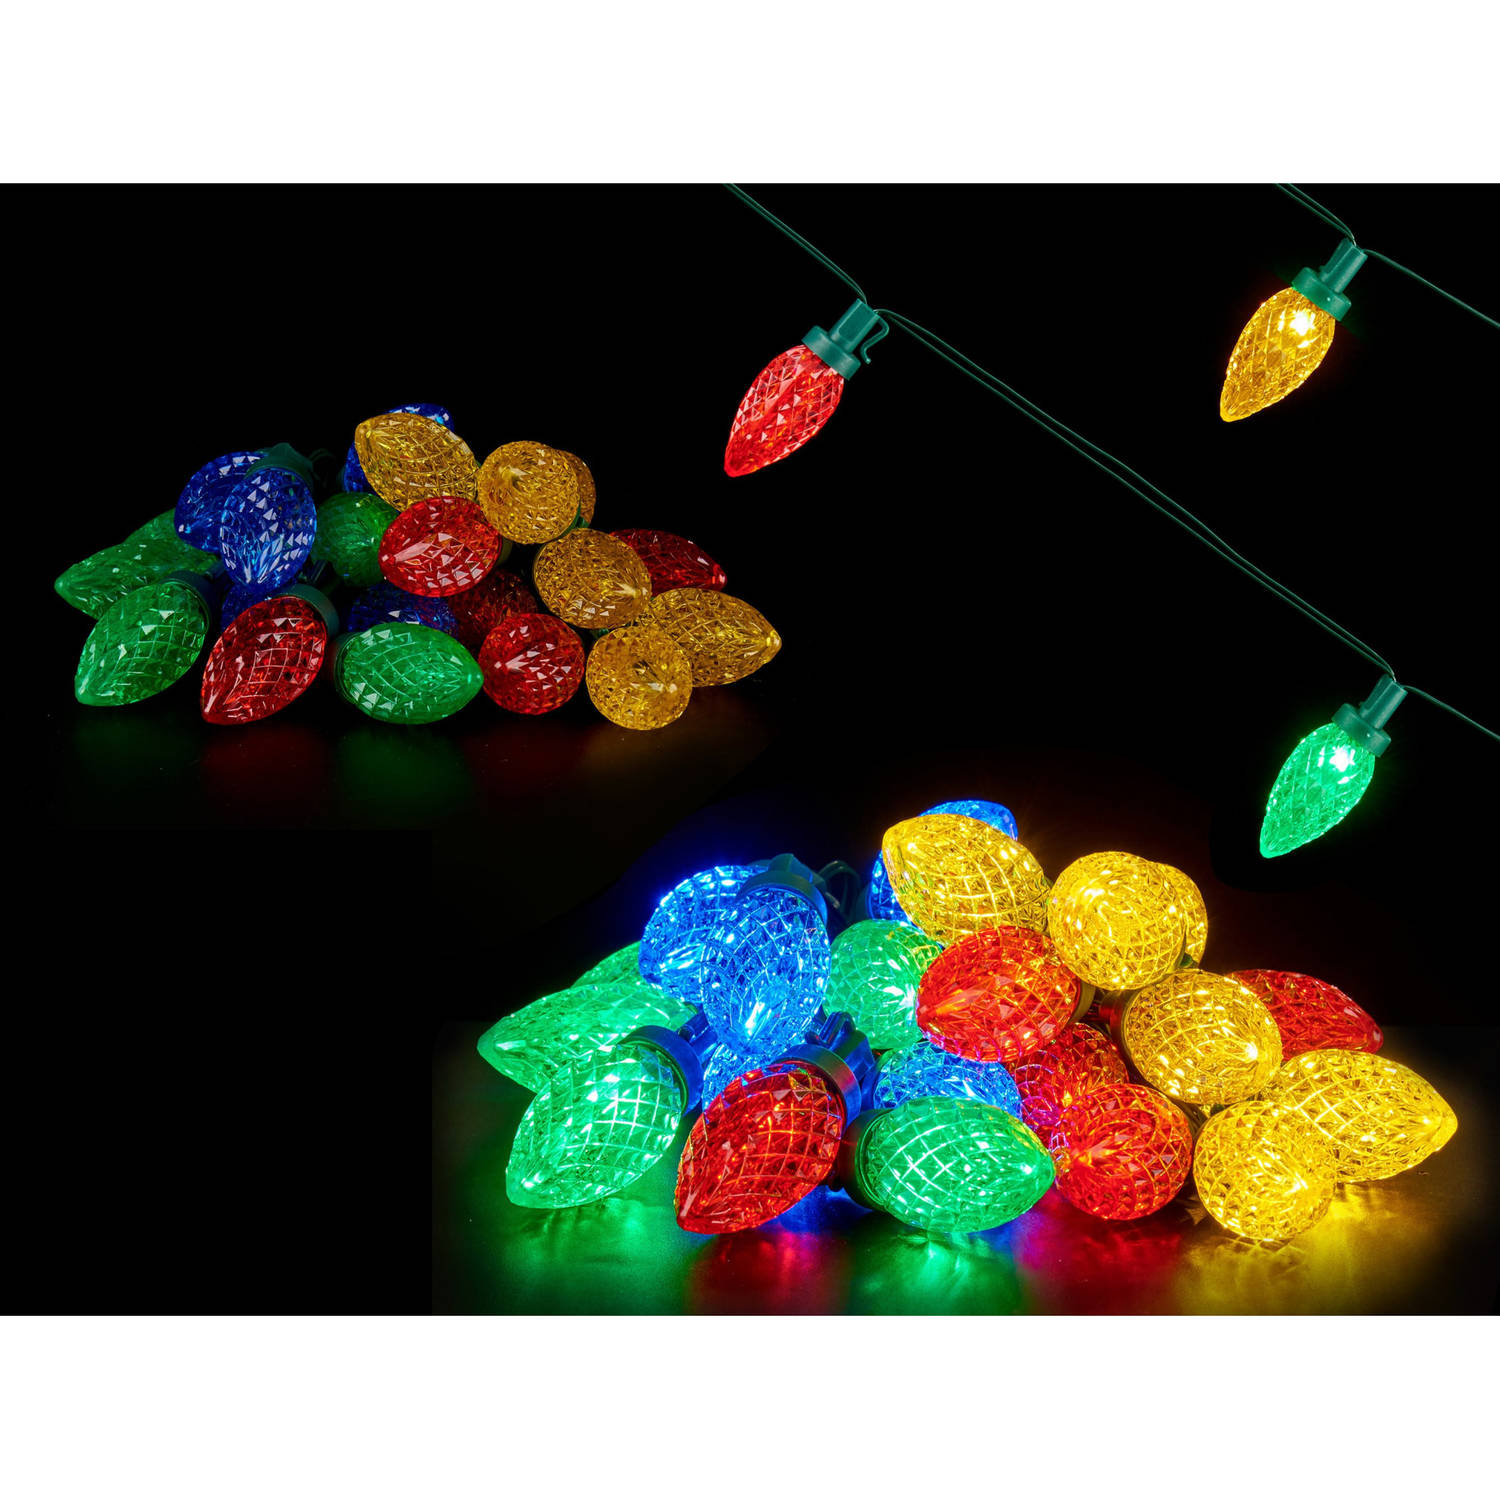 Kerstverlichting-party Lights 25x Gekleurde Led Lampjes 500 Cm Op Batterijen Kerstverlichting Kerstb